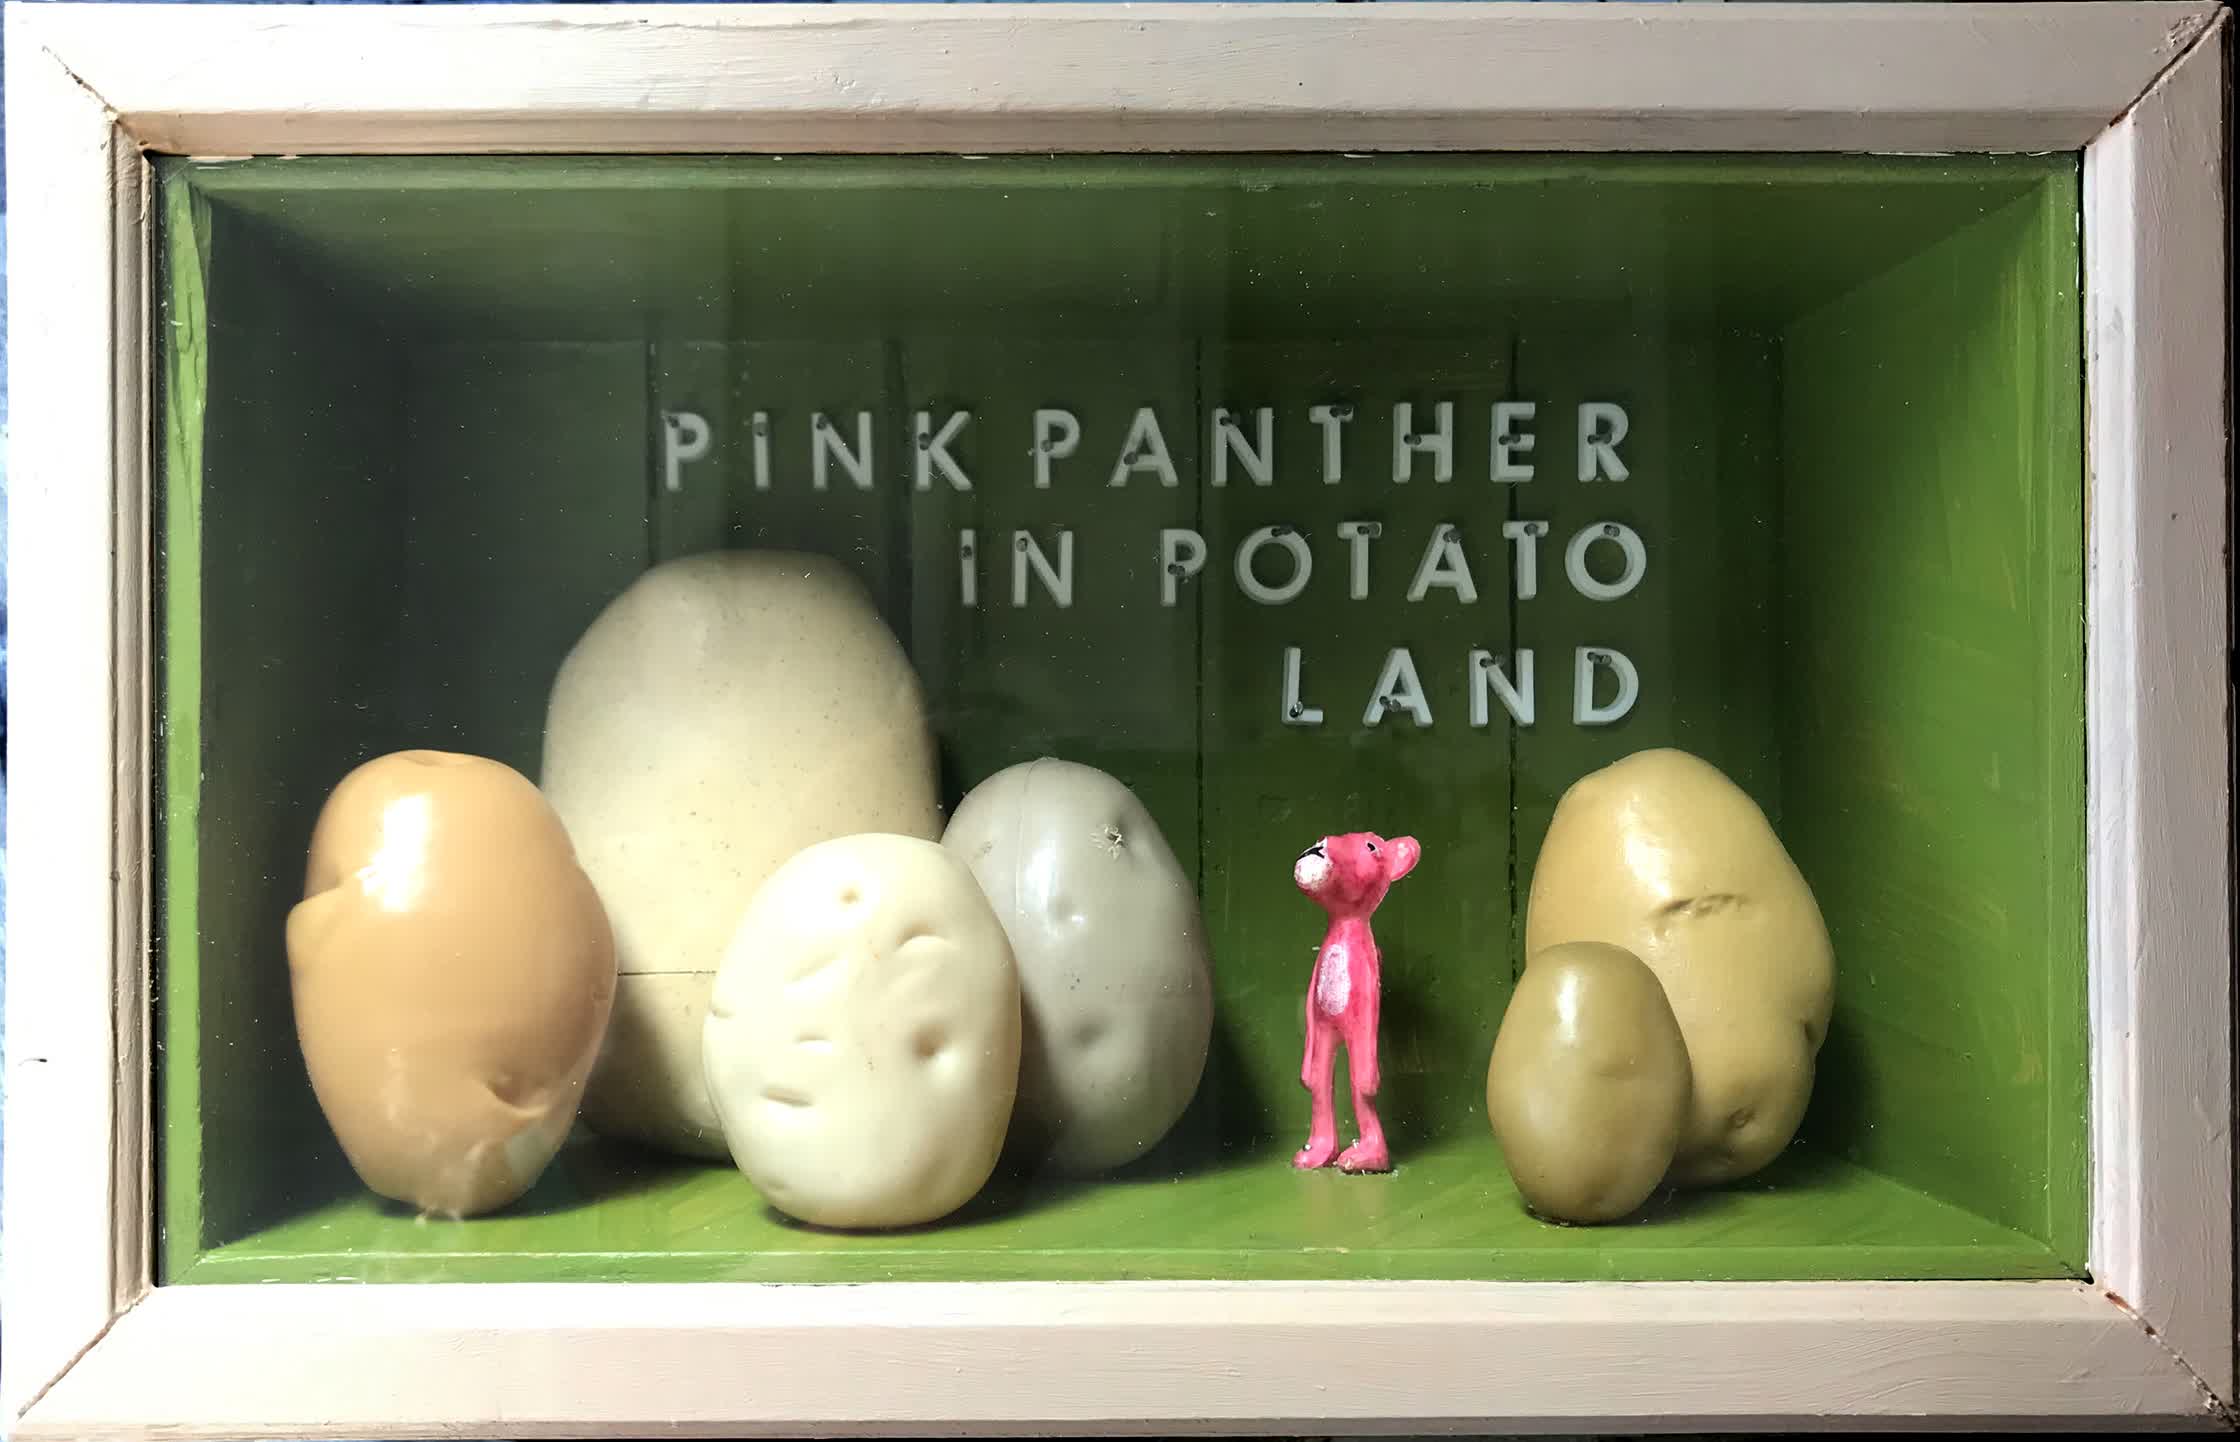 pink panther in potato land.jpg